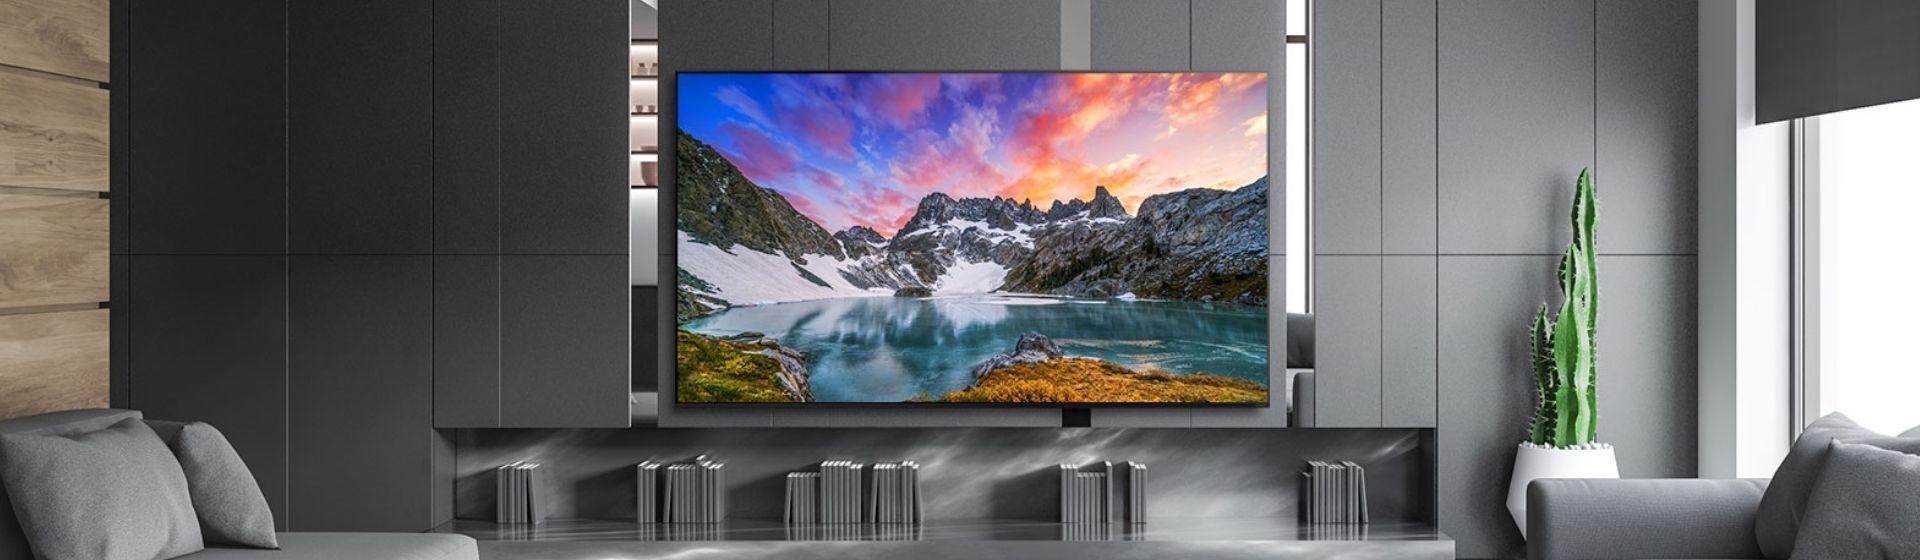 Capa do post: TVs LG NanoCell 2020: marca lança modelos 4K e estreia do 8K no Brasil